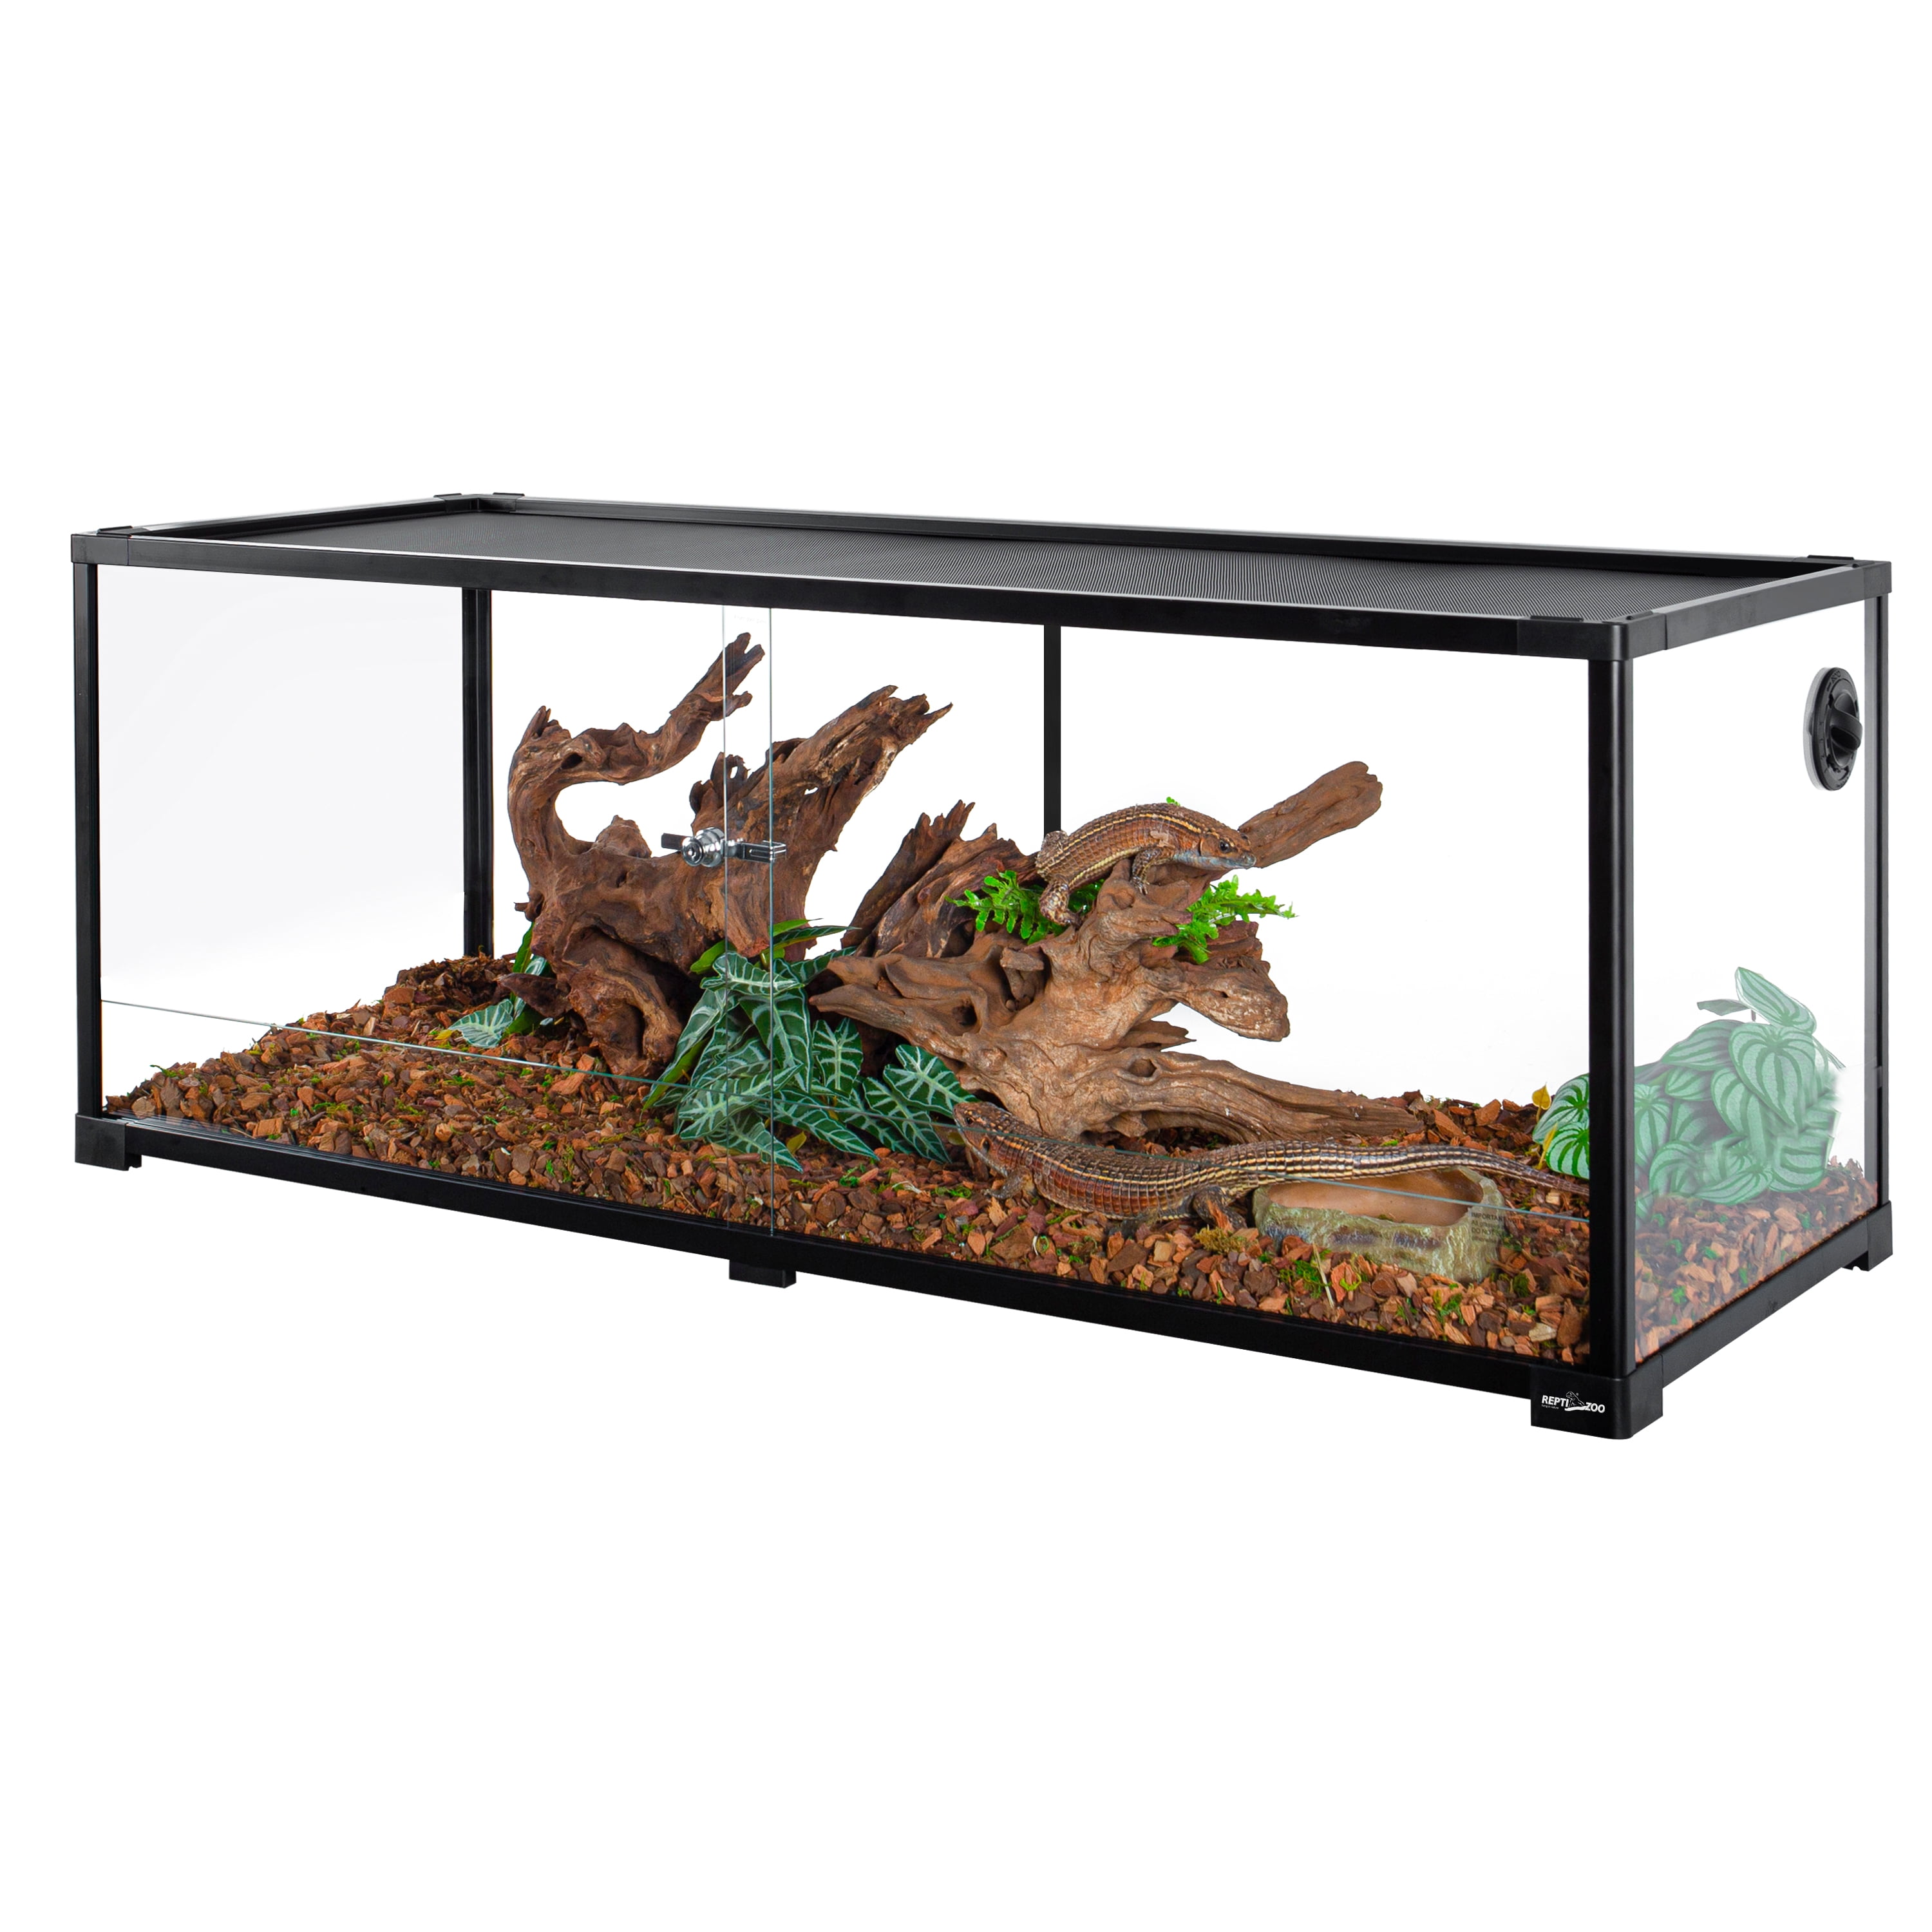 REPTIZOO Reptile Glass Tank - 48 x 18 x 18 Inches Knock Down Full View ...